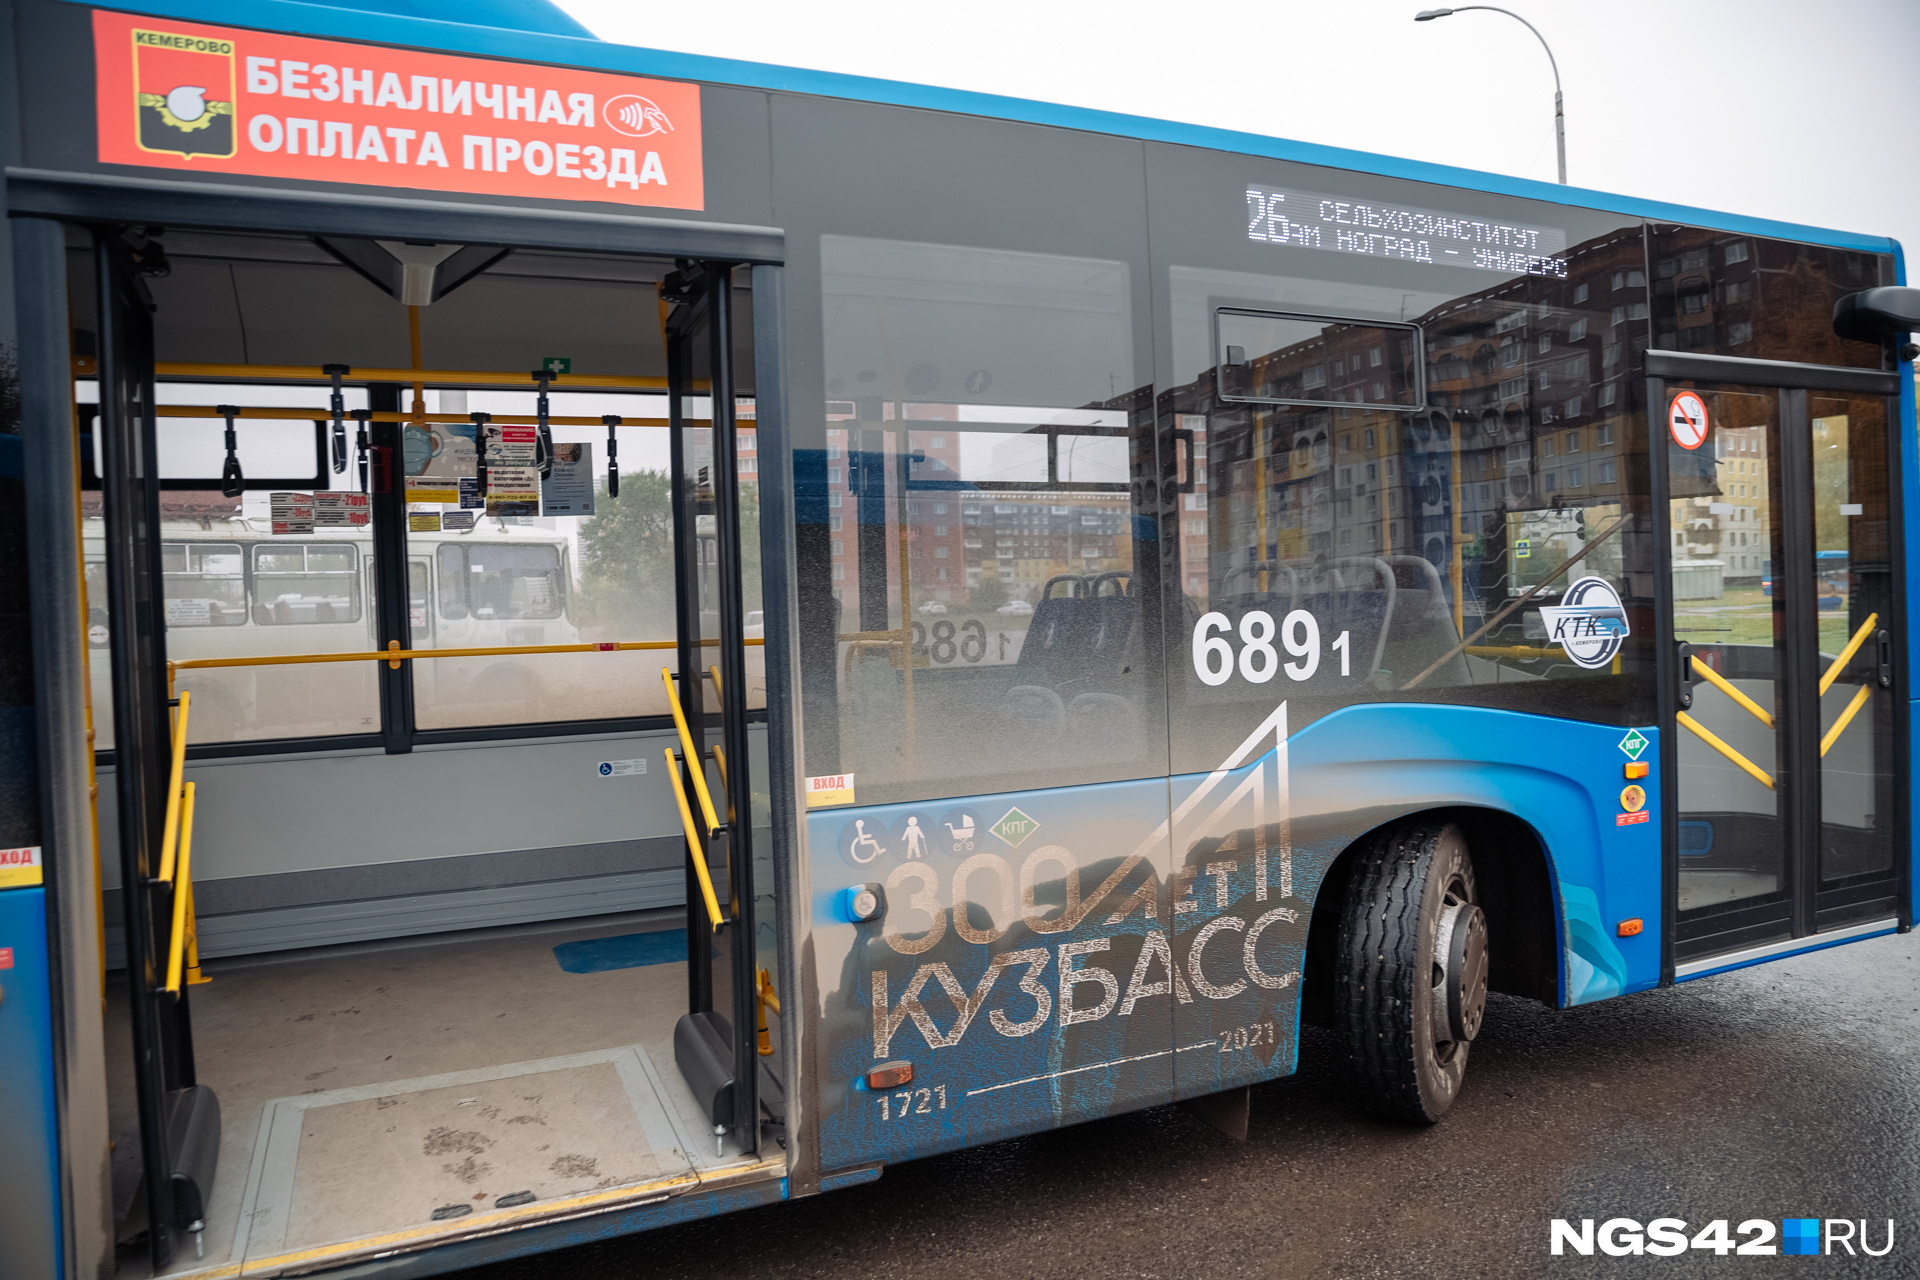 Власти Кузбасса сделали проезд в общественном транспорте бесплатным на День Победы